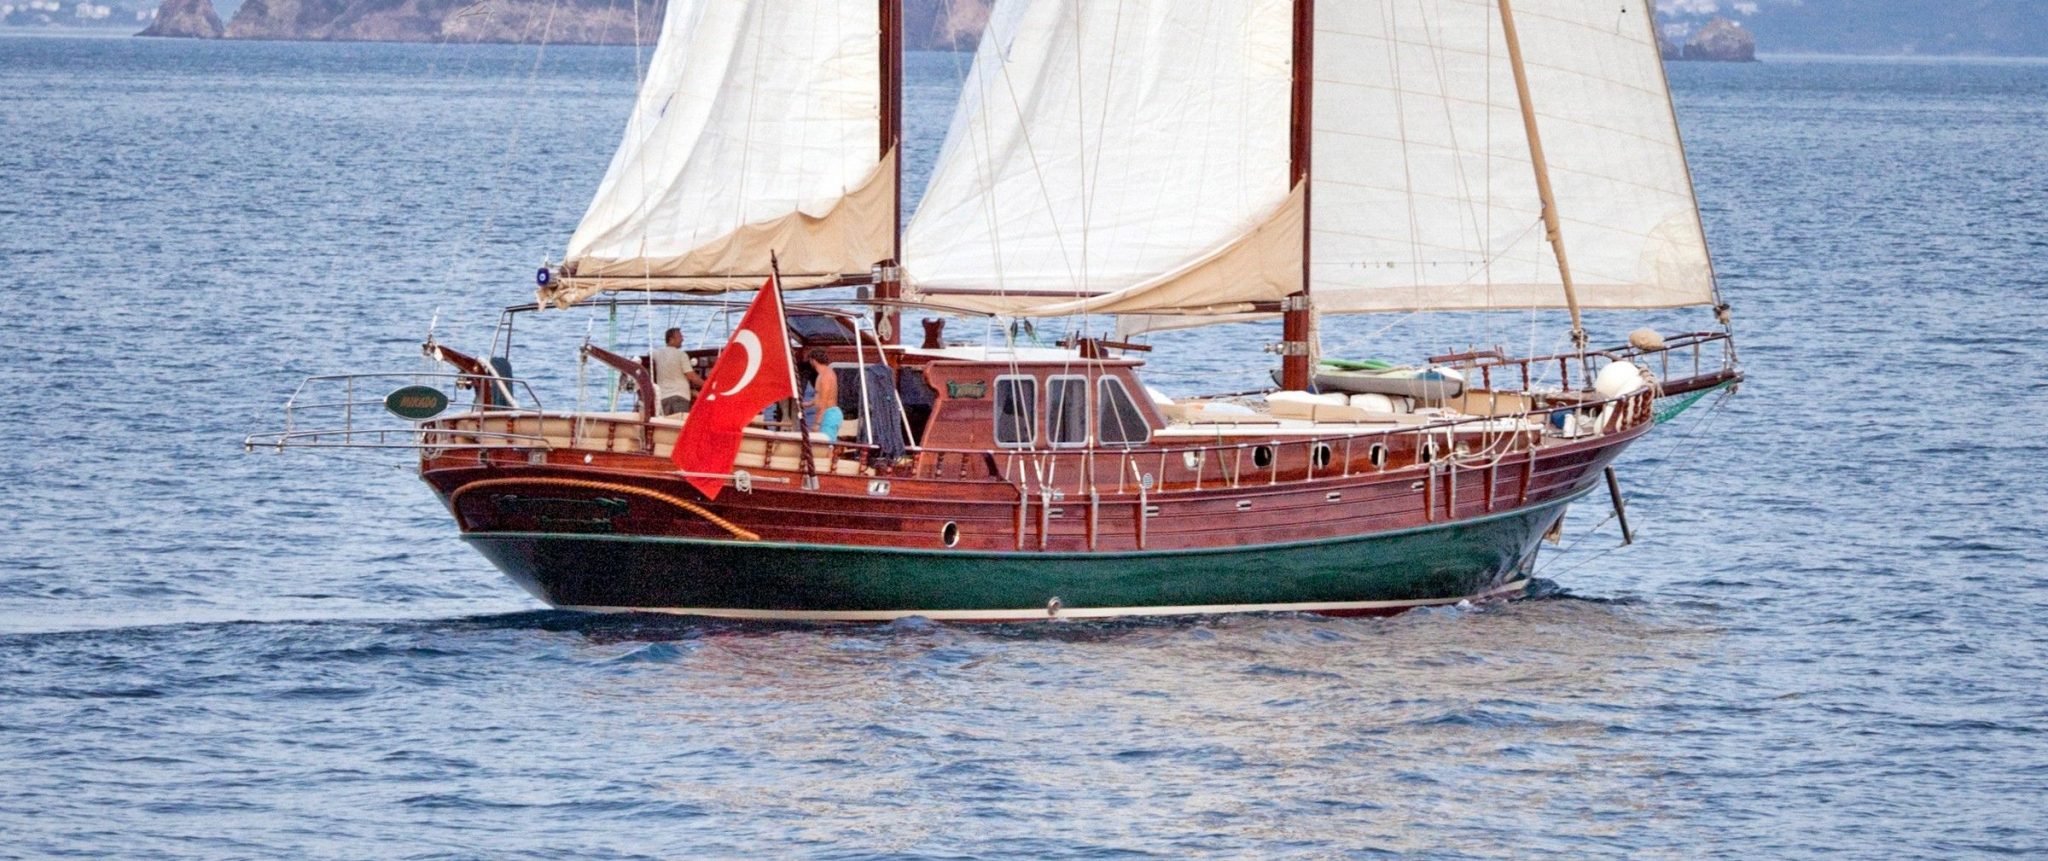 yacht charter bodrum turkey